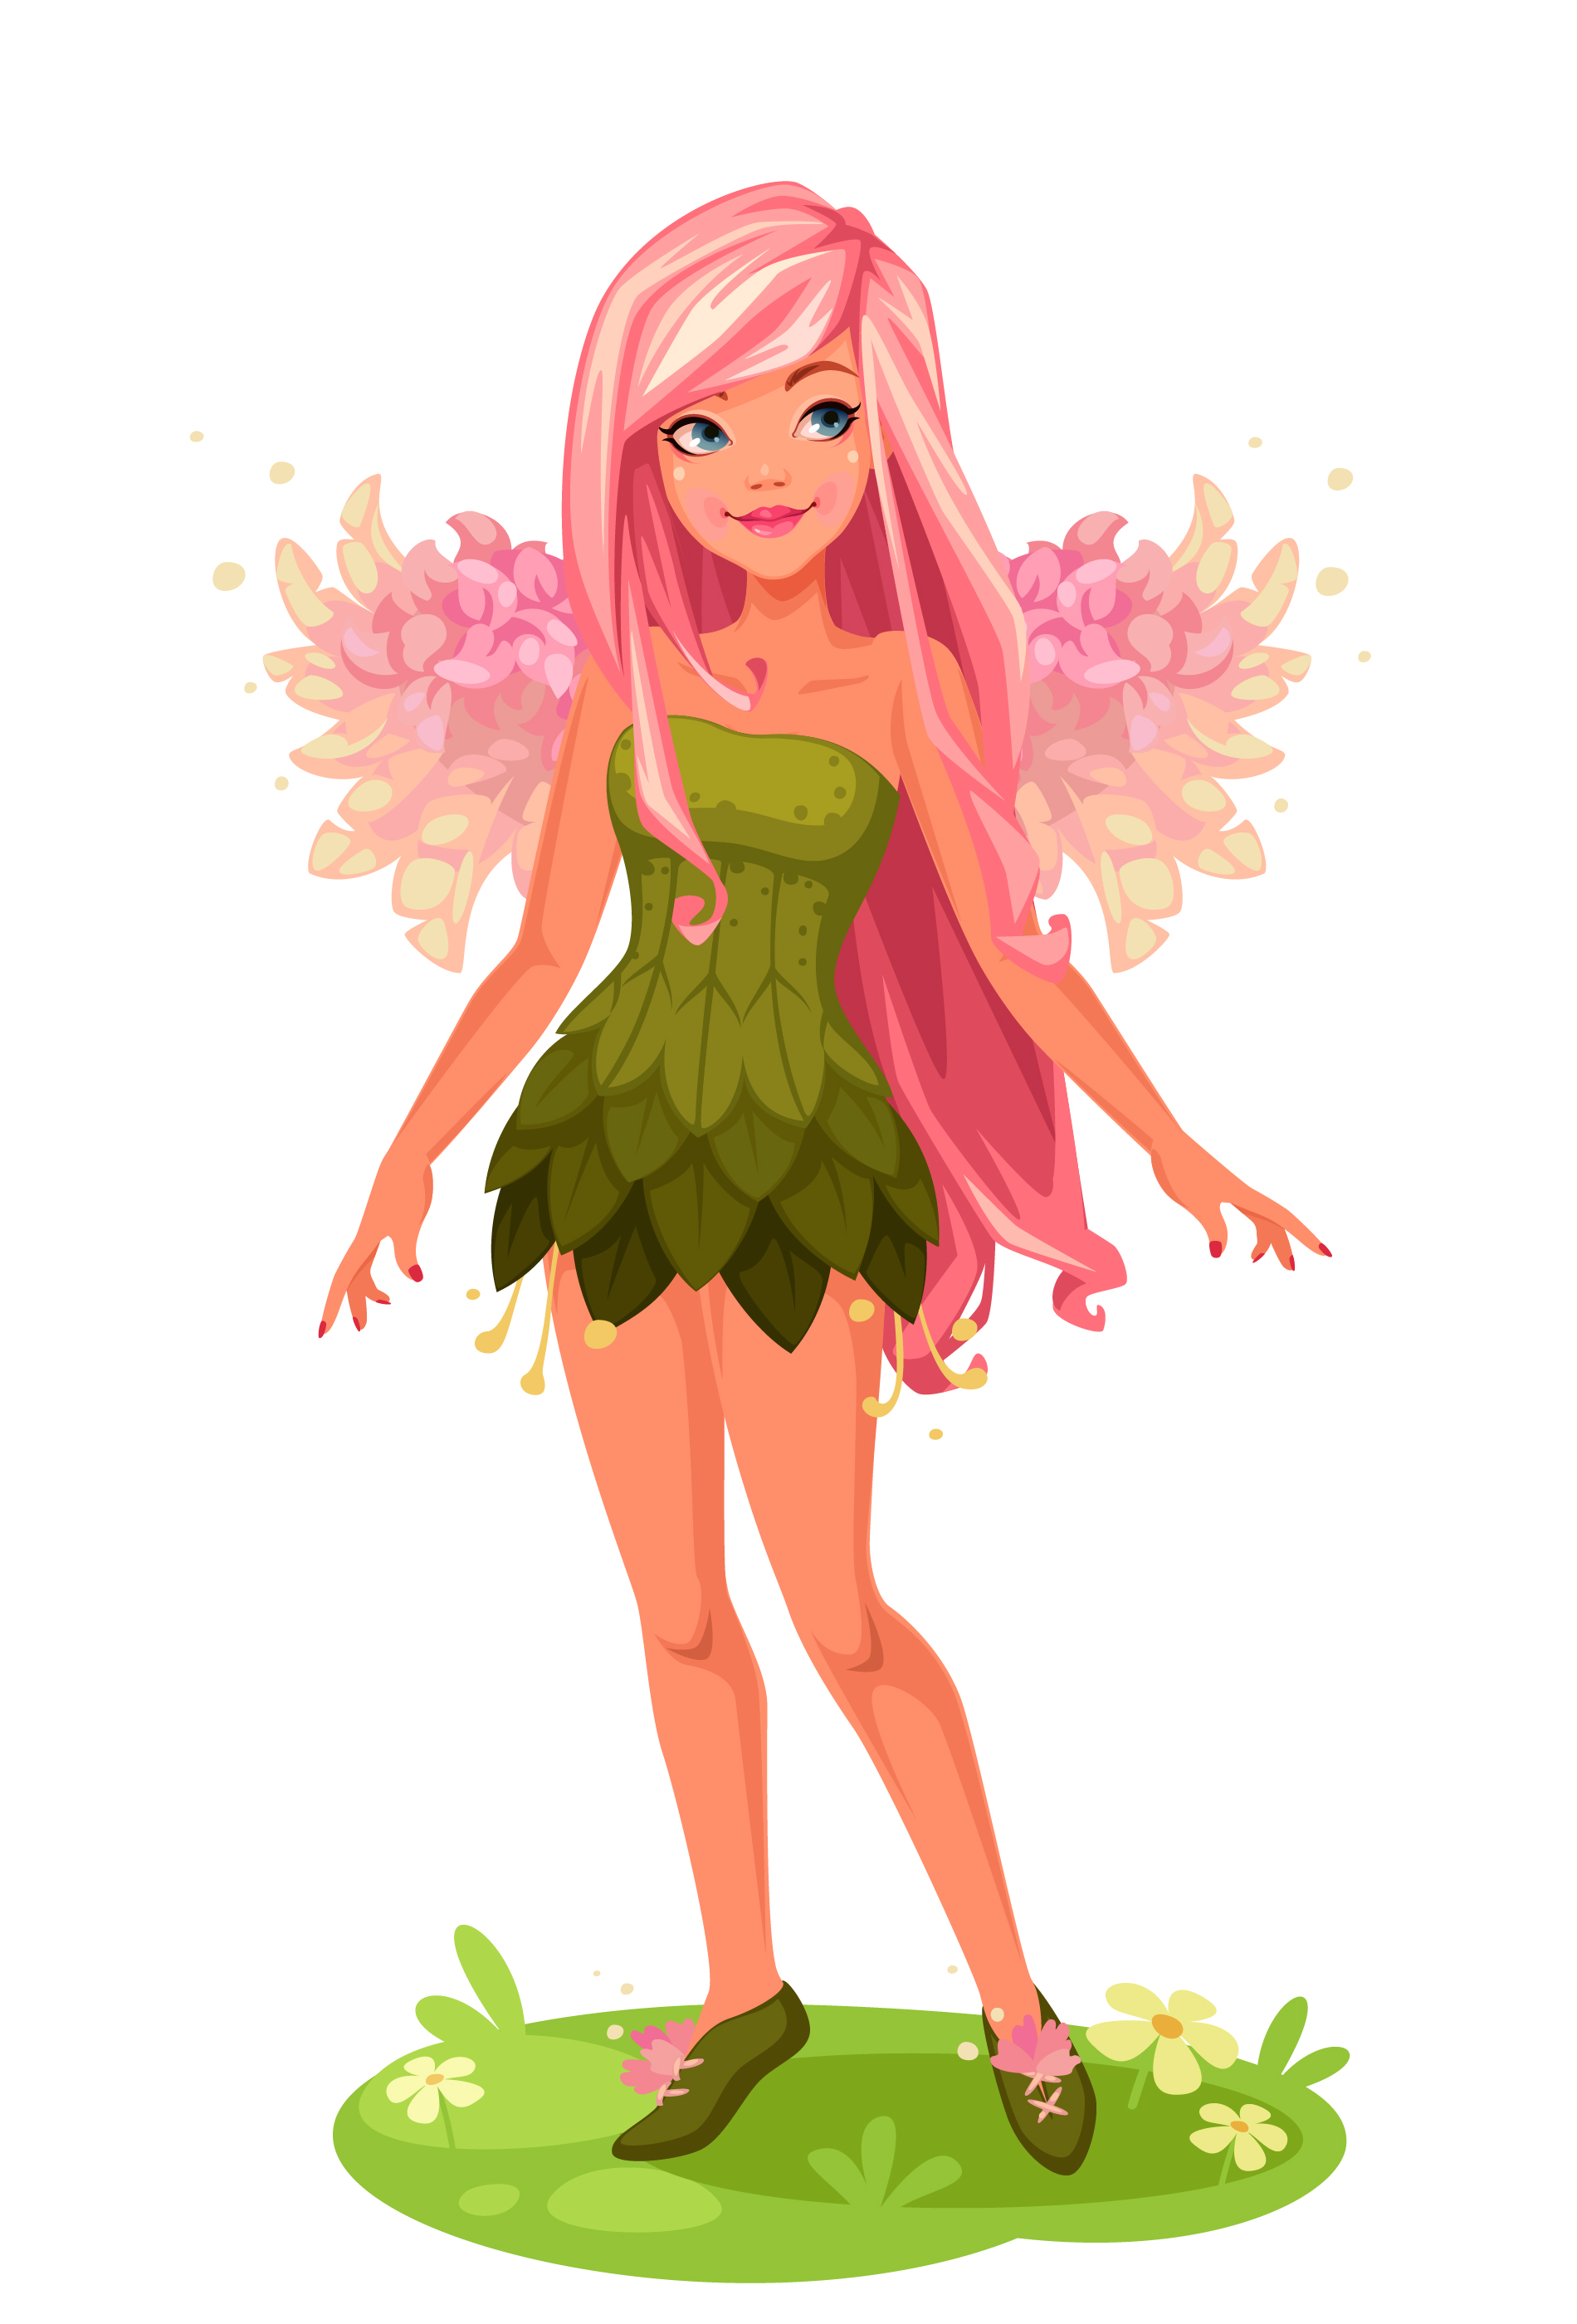 Pink wings Fairy standing 587572 Vector Art at Vecteezy